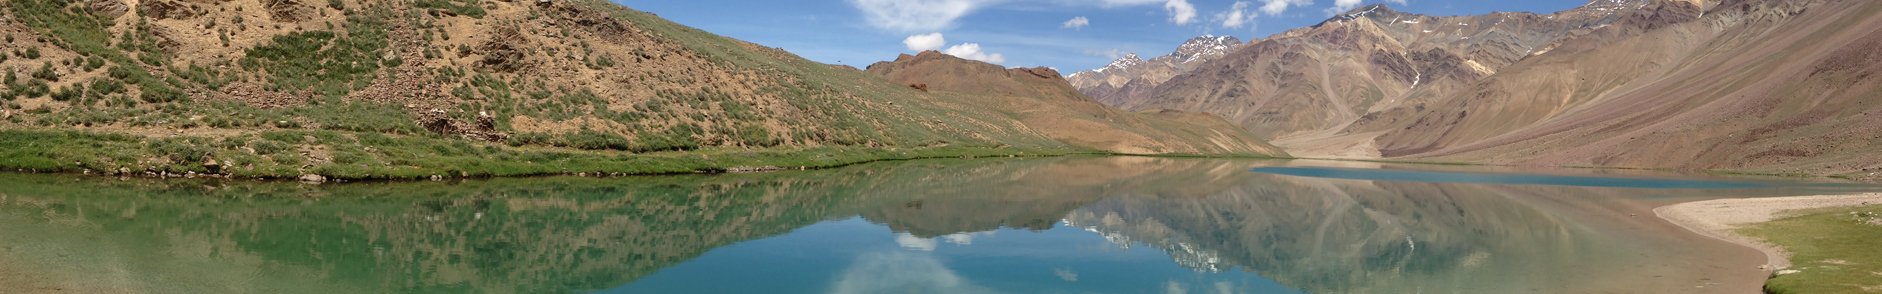 Dashair and Dhankar Lake Himachal